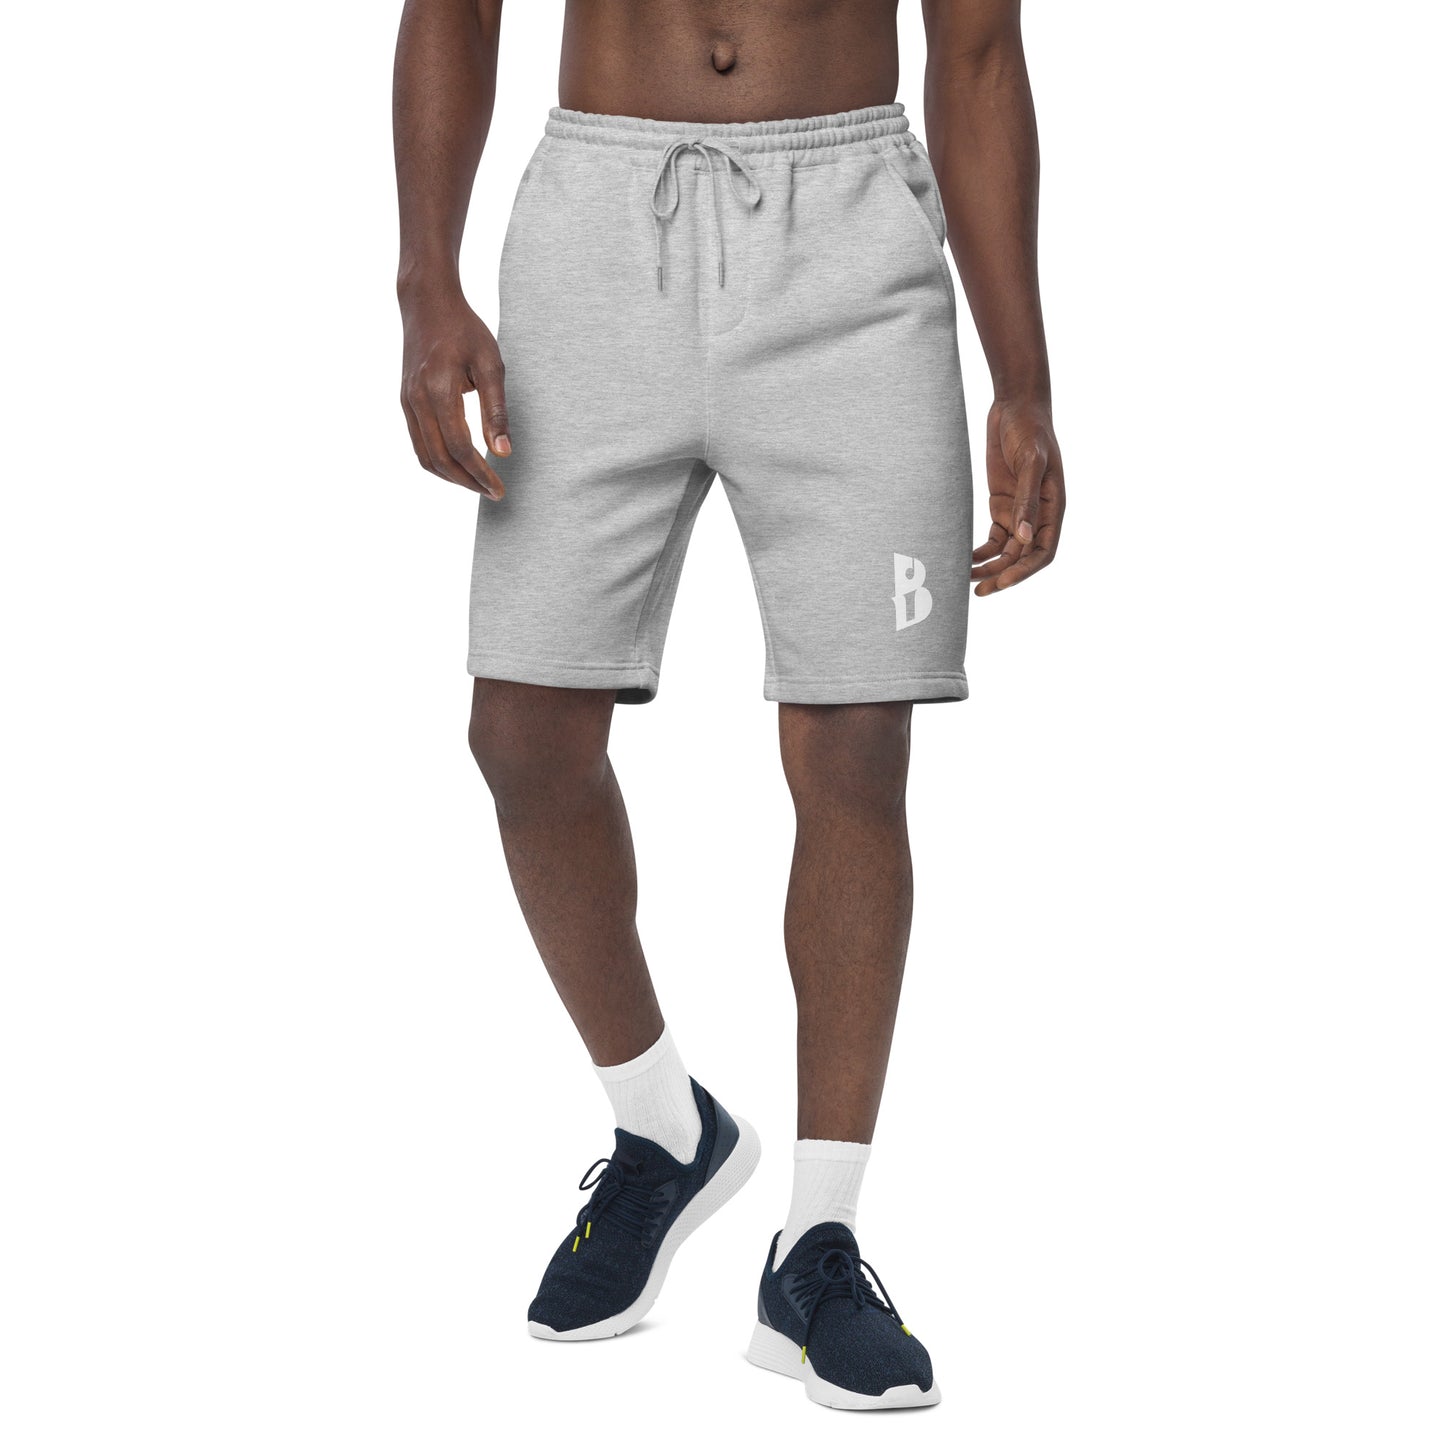 Men's IzyBeats logo fleece shorts